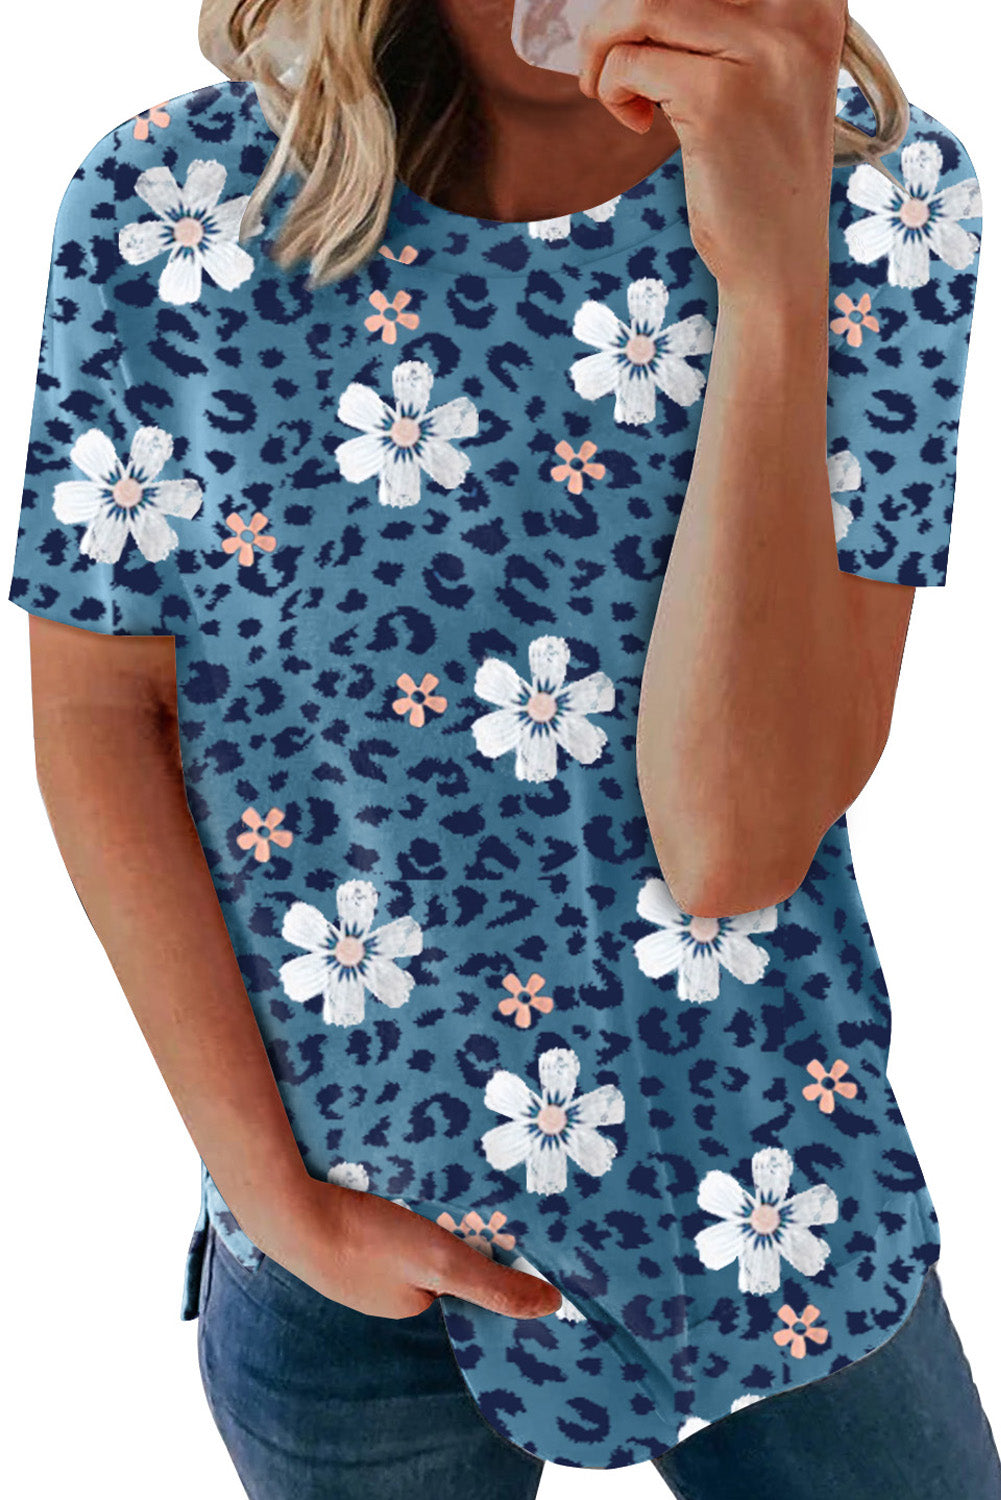 Modra majica s cvetličnim vzorcem